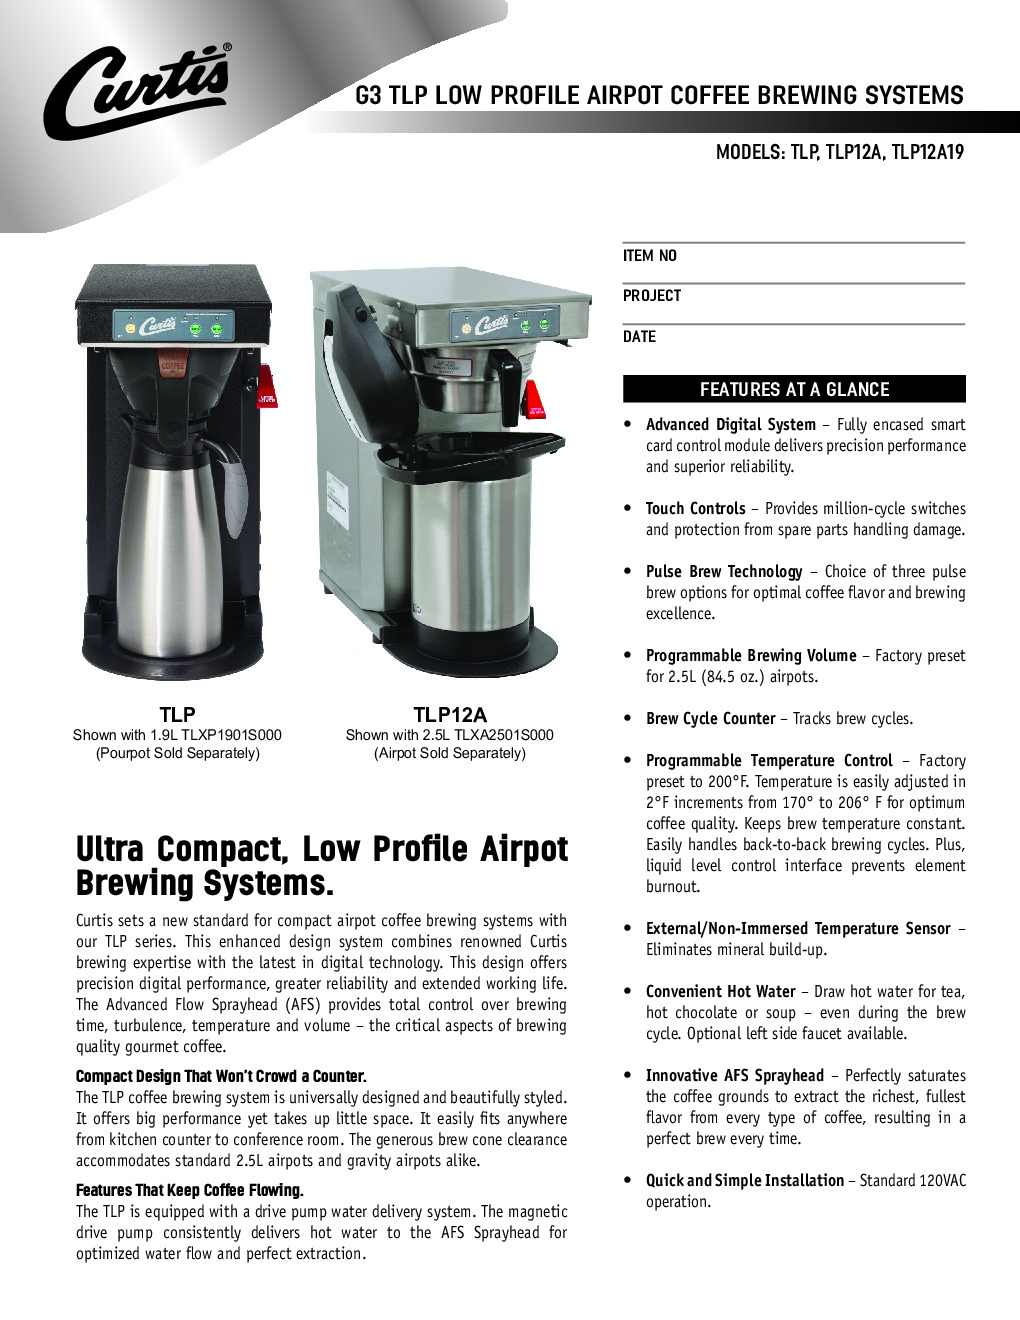 Curtis TLP12A Coffee Brewer for Airpot